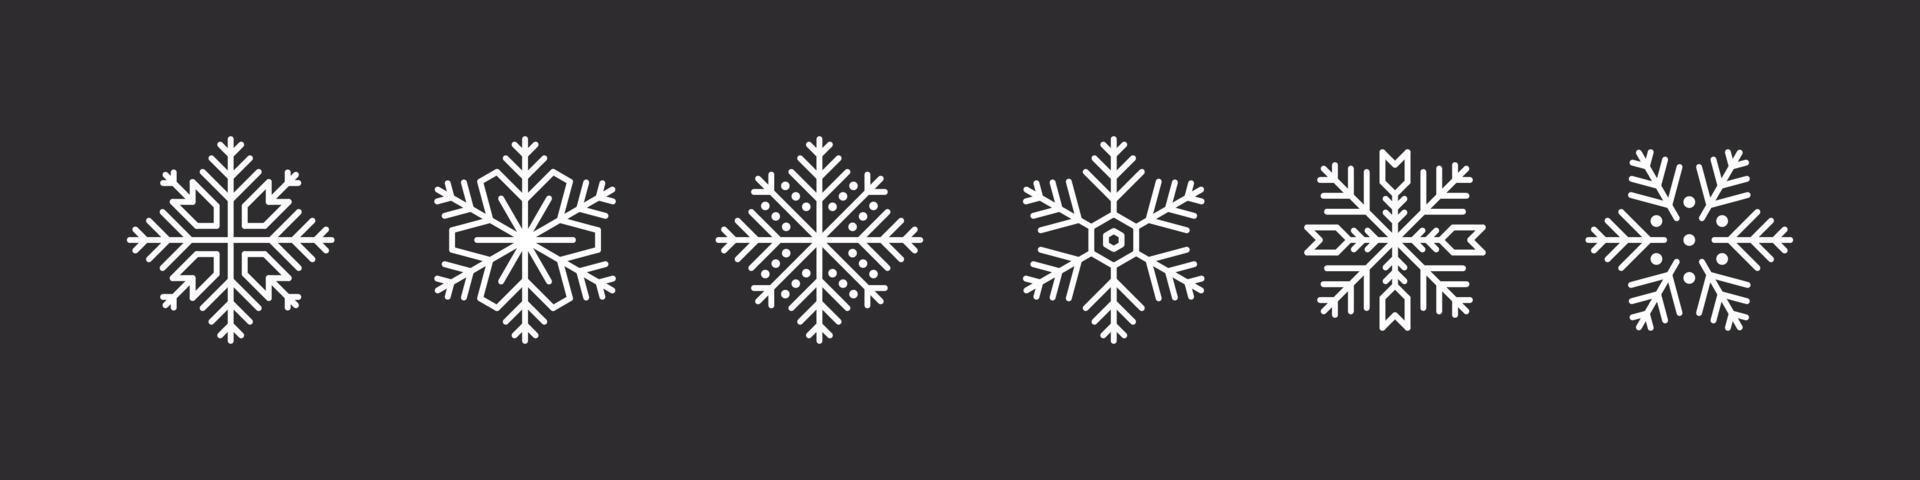 Schneeflocken gesetzt. weiße Schneeflocken auf dunklem Hintergrund. Weihnachtszeichen. Sammlung hochwertiger Schneeflocken. Vektor-Illustration vektor